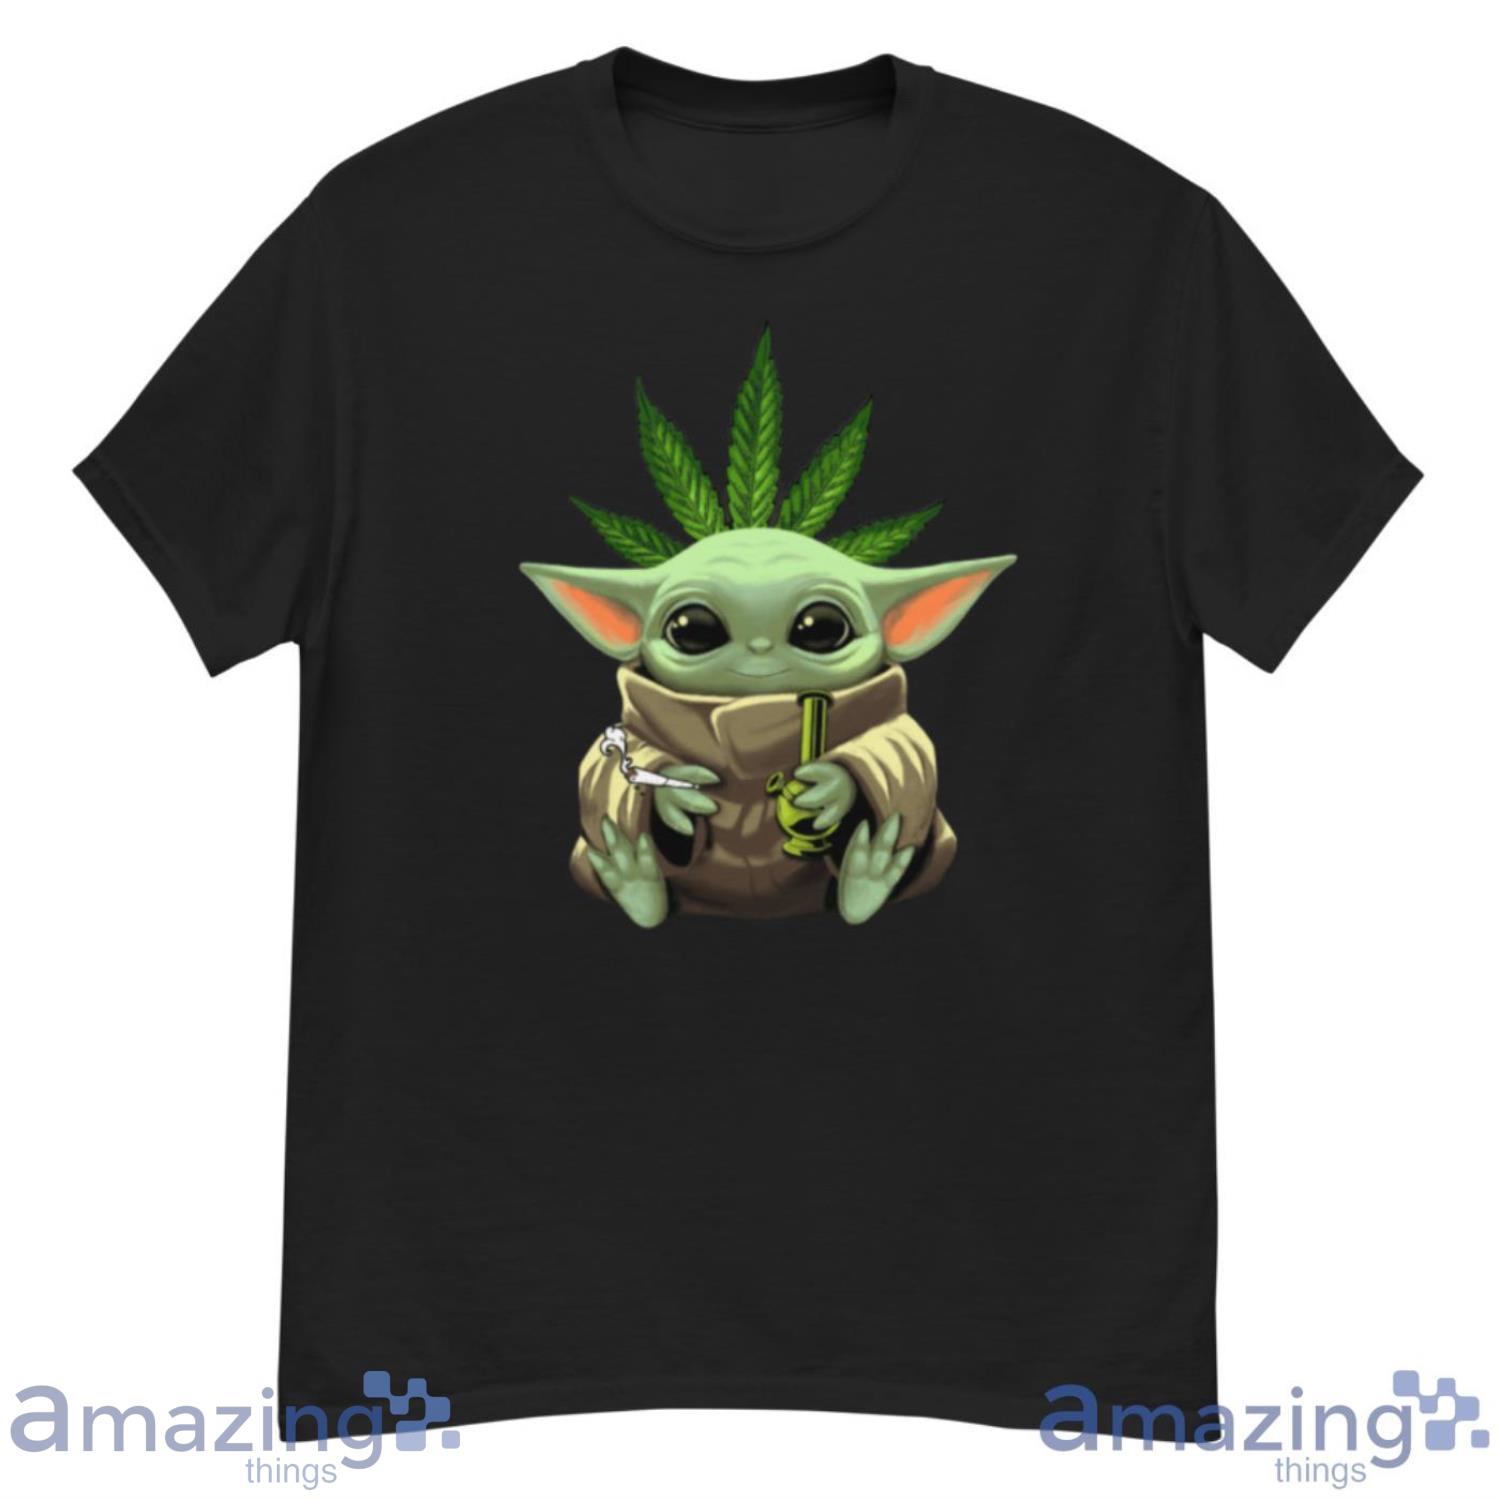 https://image.whatamazingthings.com/2022/10/baby-yoda-smokes-weed-star-wars-shirts-1.jpeg